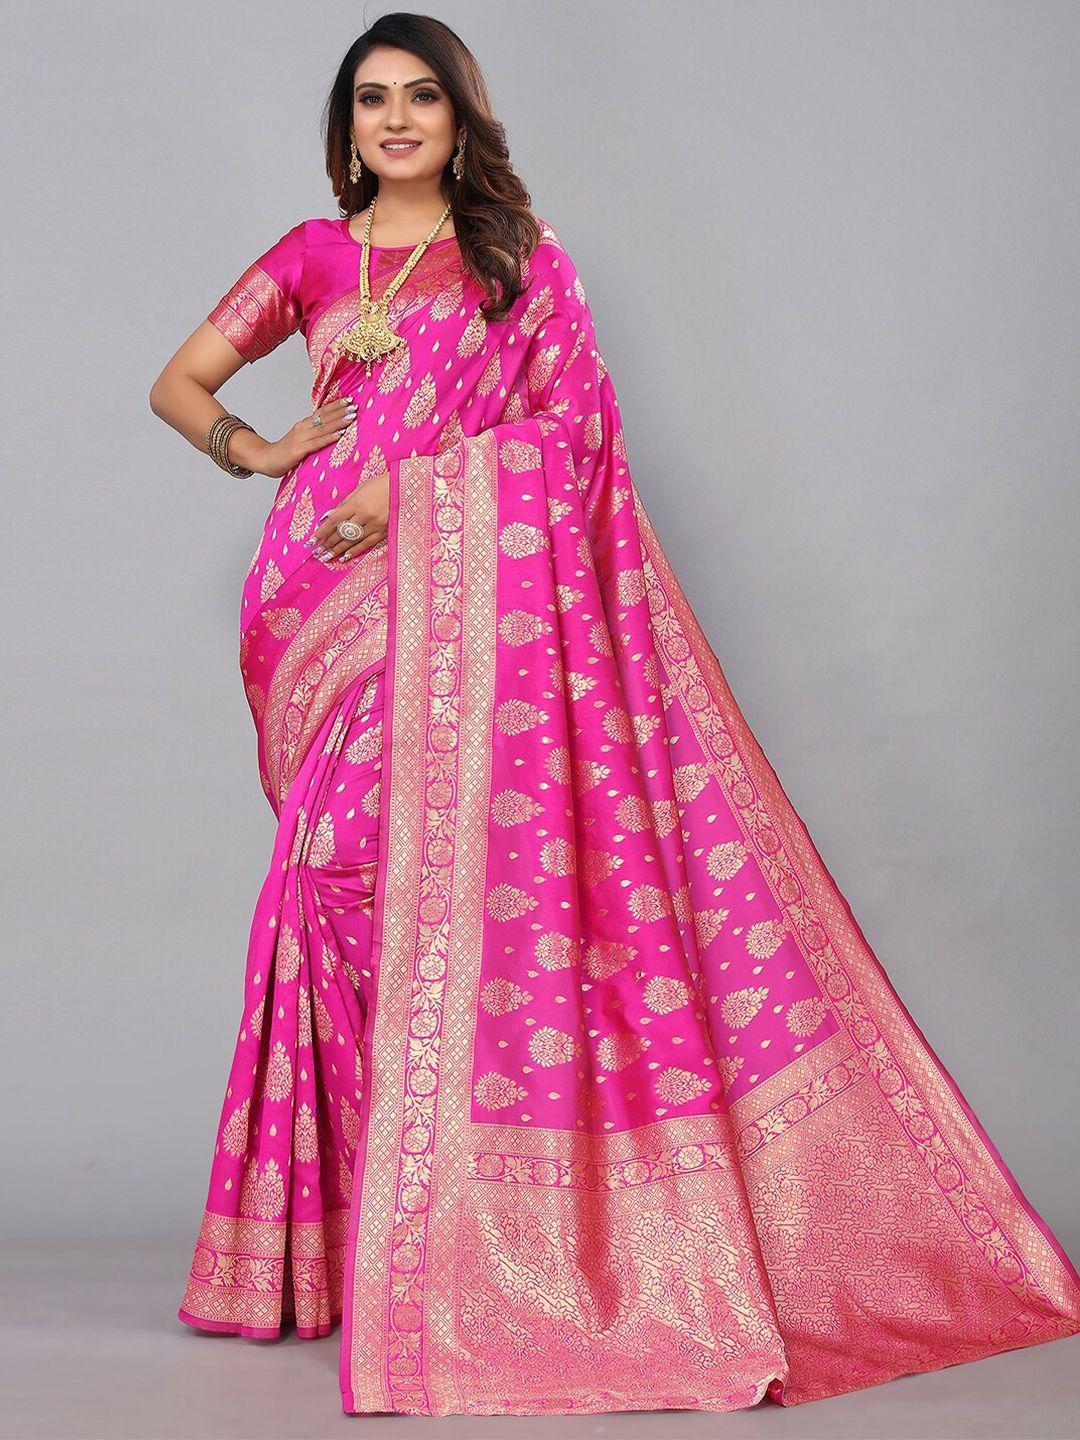 kalini woven design banarasi saree